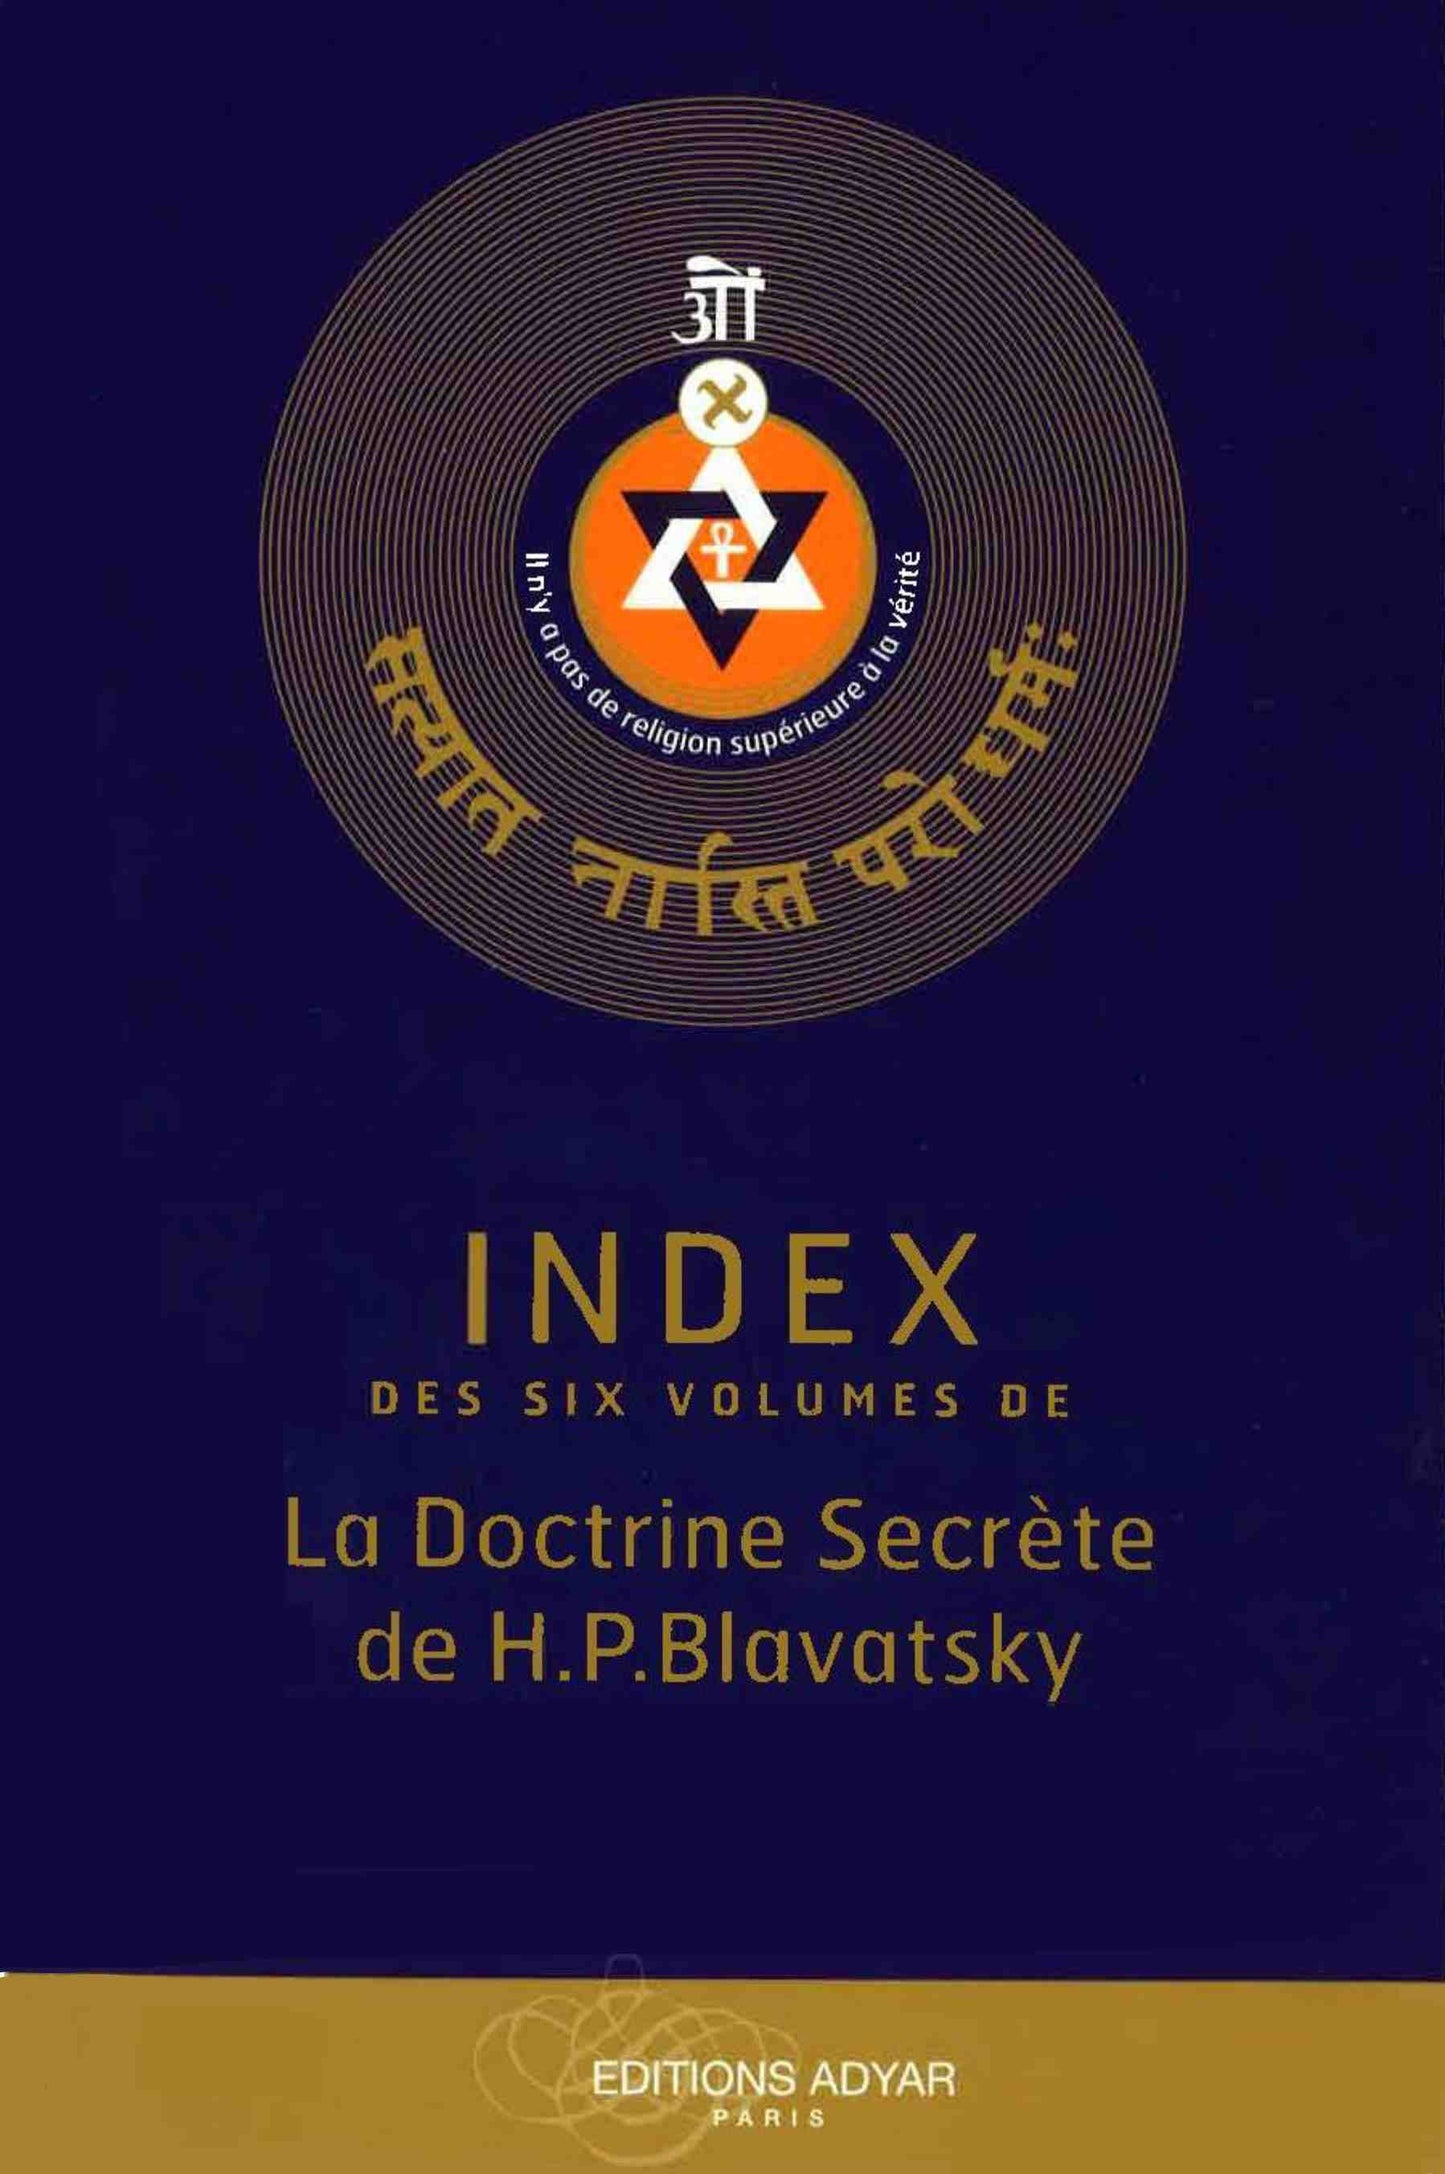 Index des six volumes de la Doctrine Secrète